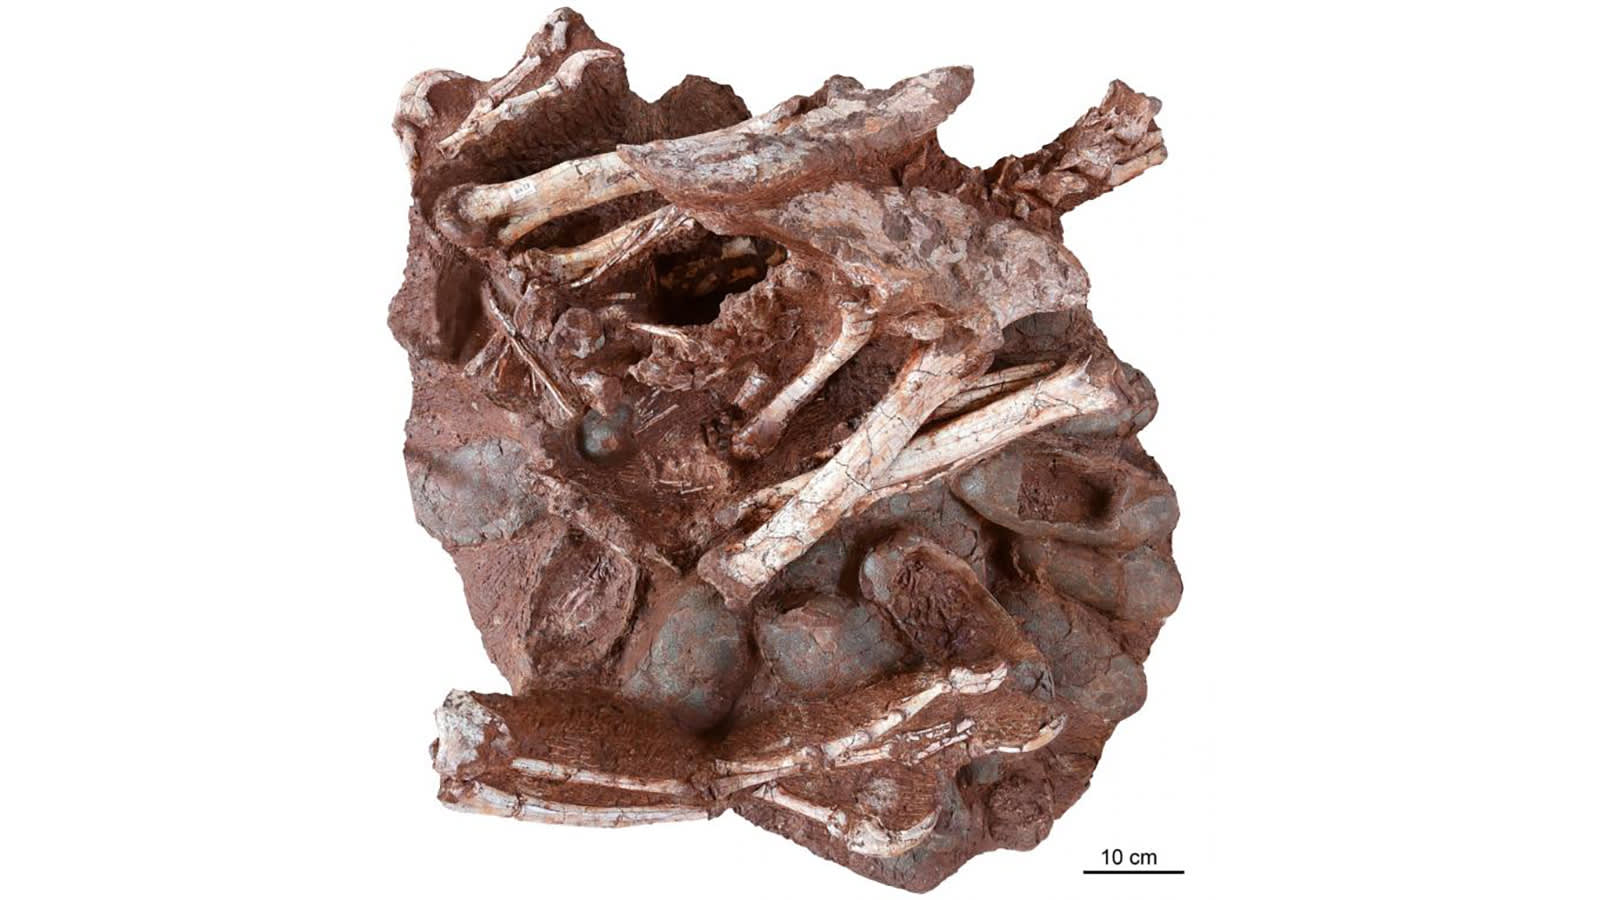 لأول مرة.. اكتشاف باحثون ديناصور محفوظ جالس على عش بيض بأجنة متحجرة